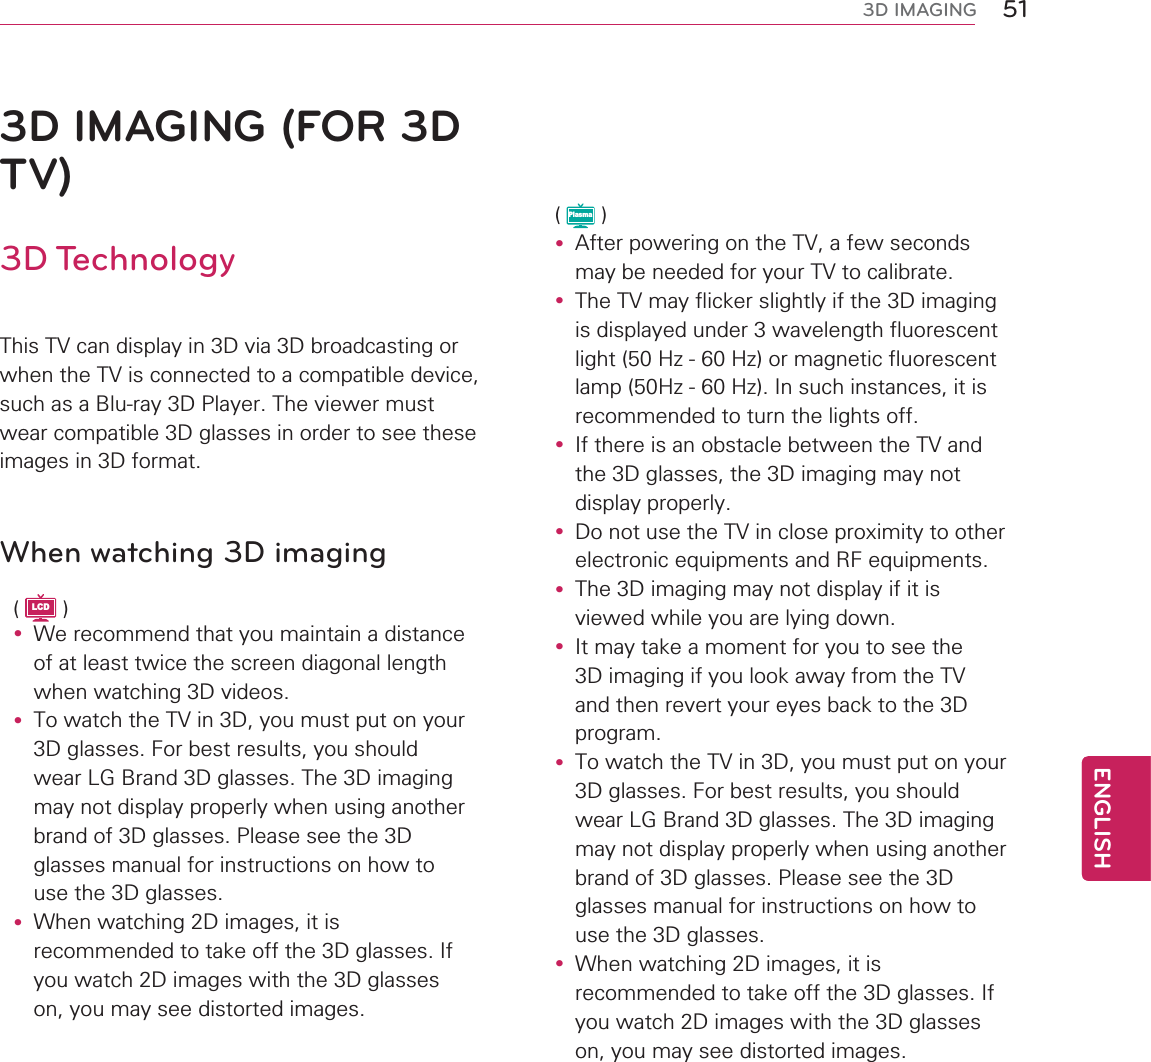 51ENGENGLISH3D IMAGING3D IMAGING (FOR 3D TV)3D Technology7KLV79FDQGLVSOD\LQ&apos;YLD&apos;EURDGFDVWLQJRUZKHQWKH79LVFRQQHFWHGWRDFRPSDWLEOHGHYLFHVXFKDVD%OXUD\&apos;3OD\HU7KHYLHZHUPXVWZHDUFRPSDWLEOH&apos;JODVVHVLQRUGHUWRVHHWKHVHLPDJHVLQ&apos;IRUPDWWhen watching 3D imagingLCDy :HUHFRPPHQGWKDW\RXPDLQWDLQDGLVWDQFHRIDWOHDVWWZLFHWKHVFUHHQGLDJRQDOOHQJWKZKHQZDWFKLQJ&apos;YLGHRVy 7RZDWFKWKH79LQ&apos;\RXPXVWSXWRQ\RXU&apos;JODVVHV)RUEHVWUHVXOWV\RXVKRXOGZHDU/*%UDQG&apos;JODVVHV7KH&apos;LPDJLQJPD\QRWGLVSOD\SURSHUO\ZKHQXVLQJDQRWKHUEUDQGRI&apos;JODVVHV3OHDVHVHHWKH&apos;JODVVHVPDQXDOIRULQVWUXFWLRQVRQKRZWRXVHWKH&apos;JODVVHVy :KHQZDWFKLQJ&apos;LPDJHVLWLVUHFRPPHQGHGWRWDNHRIIWKH&apos;JODVVHV,I\RXZDWFK&apos;LPDJHVZLWKWKH&apos;JODVVHVRQ\RXPD\VHHGLVWRUWHGLPDJHVPlasmay $IWHUSRZHULQJRQWKH79DIHZVHFRQGVPD\EHQHHGHGIRU\RXU79WRFDOLEUDWHy 7KH79PD\IOLFNHUVOLJKWO\LIWKH&apos;LPDJLQJLVGLVSOD\HGXQGHUZDYHOHQJWKIOXRUHVFHQWOLJKW+]+]RUPDJQHWLFIOXRUHVFHQWODPS+]+],QVXFKLQVWDQFHVLWLVUHFRPPHQGHGWRWXUQWKHOLJKWVRIIy ,IWKHUHLVDQREVWDFOHEHWZHHQWKH79DQGWKH&apos;JODVVHVWKH&apos;LPDJLQJPD\QRWGLVSOD\SURSHUO\y &apos;RQRWXVHWKH79LQFORVHSUR[LPLW\WRRWKHUHOHFWURQLFHTXLSPHQWVDQG5)HTXLSPHQWVy 7KH&apos;LPDJLQJPD\QRWGLVSOD\LILWLVYLHZHGZKLOH\RXDUHO\LQJGRZQy ,WPD\WDNHDPRPHQWIRU\RXWRVHHWKH&apos;LPDJLQJLI\RXORRNDZD\IURPWKH79DQGWKHQUHYHUW\RXUH\HVEDFNWRWKH&apos;SURJUDPy 7RZDWFKWKH79LQ&apos;\RXPXVWSXWRQ\RXU&apos;JODVVHV)RUEHVWUHVXOWV\RXVKRXOGZHDU/*%UDQG&apos;JODVVHV7KH&apos;LPDJLQJPD\QRWGLVSOD\SURSHUO\ZKHQXVLQJDQRWKHUEUDQGRI&apos;JODVVHV3OHDVHVHHWKH&apos;JODVVHVPDQXDOIRULQVWUXFWLRQVRQKRZWRXVHWKH&apos;JODVVHVy :KHQZDWFKLQJ&apos;LPDJHVLWLVUHFRPPHQGHGWRWDNHRIIWKH&apos;JODVVHV,I\RXZDWFK&apos;LPDJHVZLWKWKH&apos;JODVVHVRQ\RXPD\VHHGLVWRUWHGLPDJHV